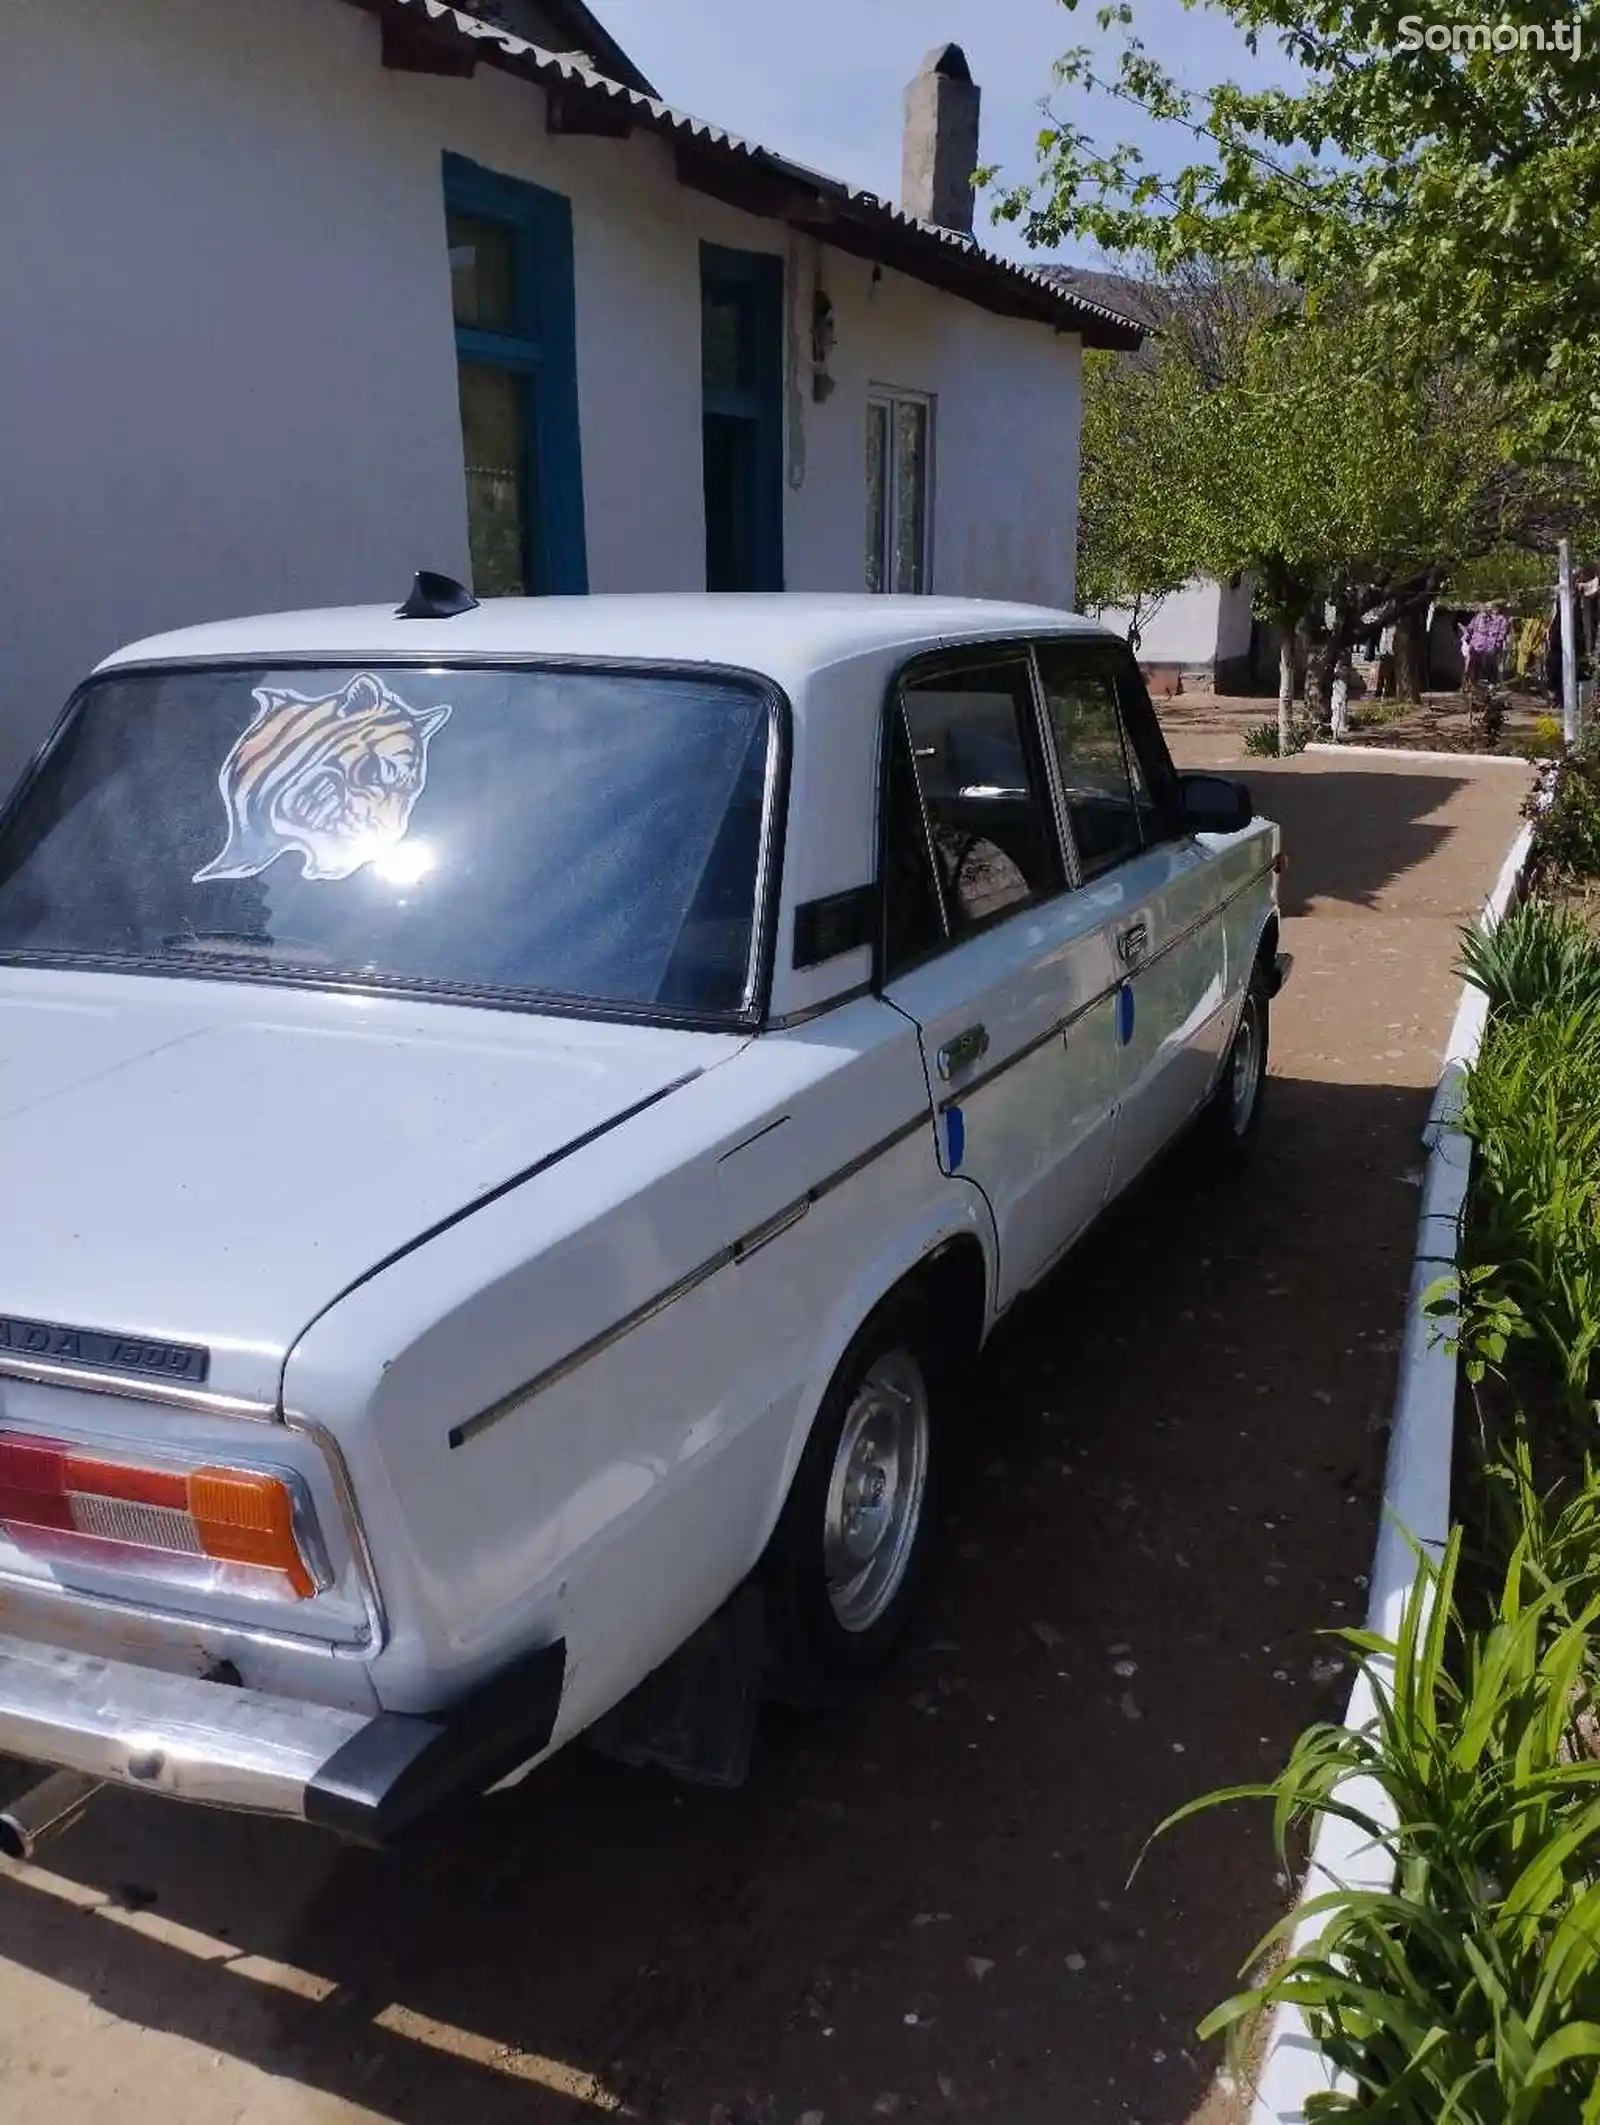 ВАЗ 2106, 1990-3